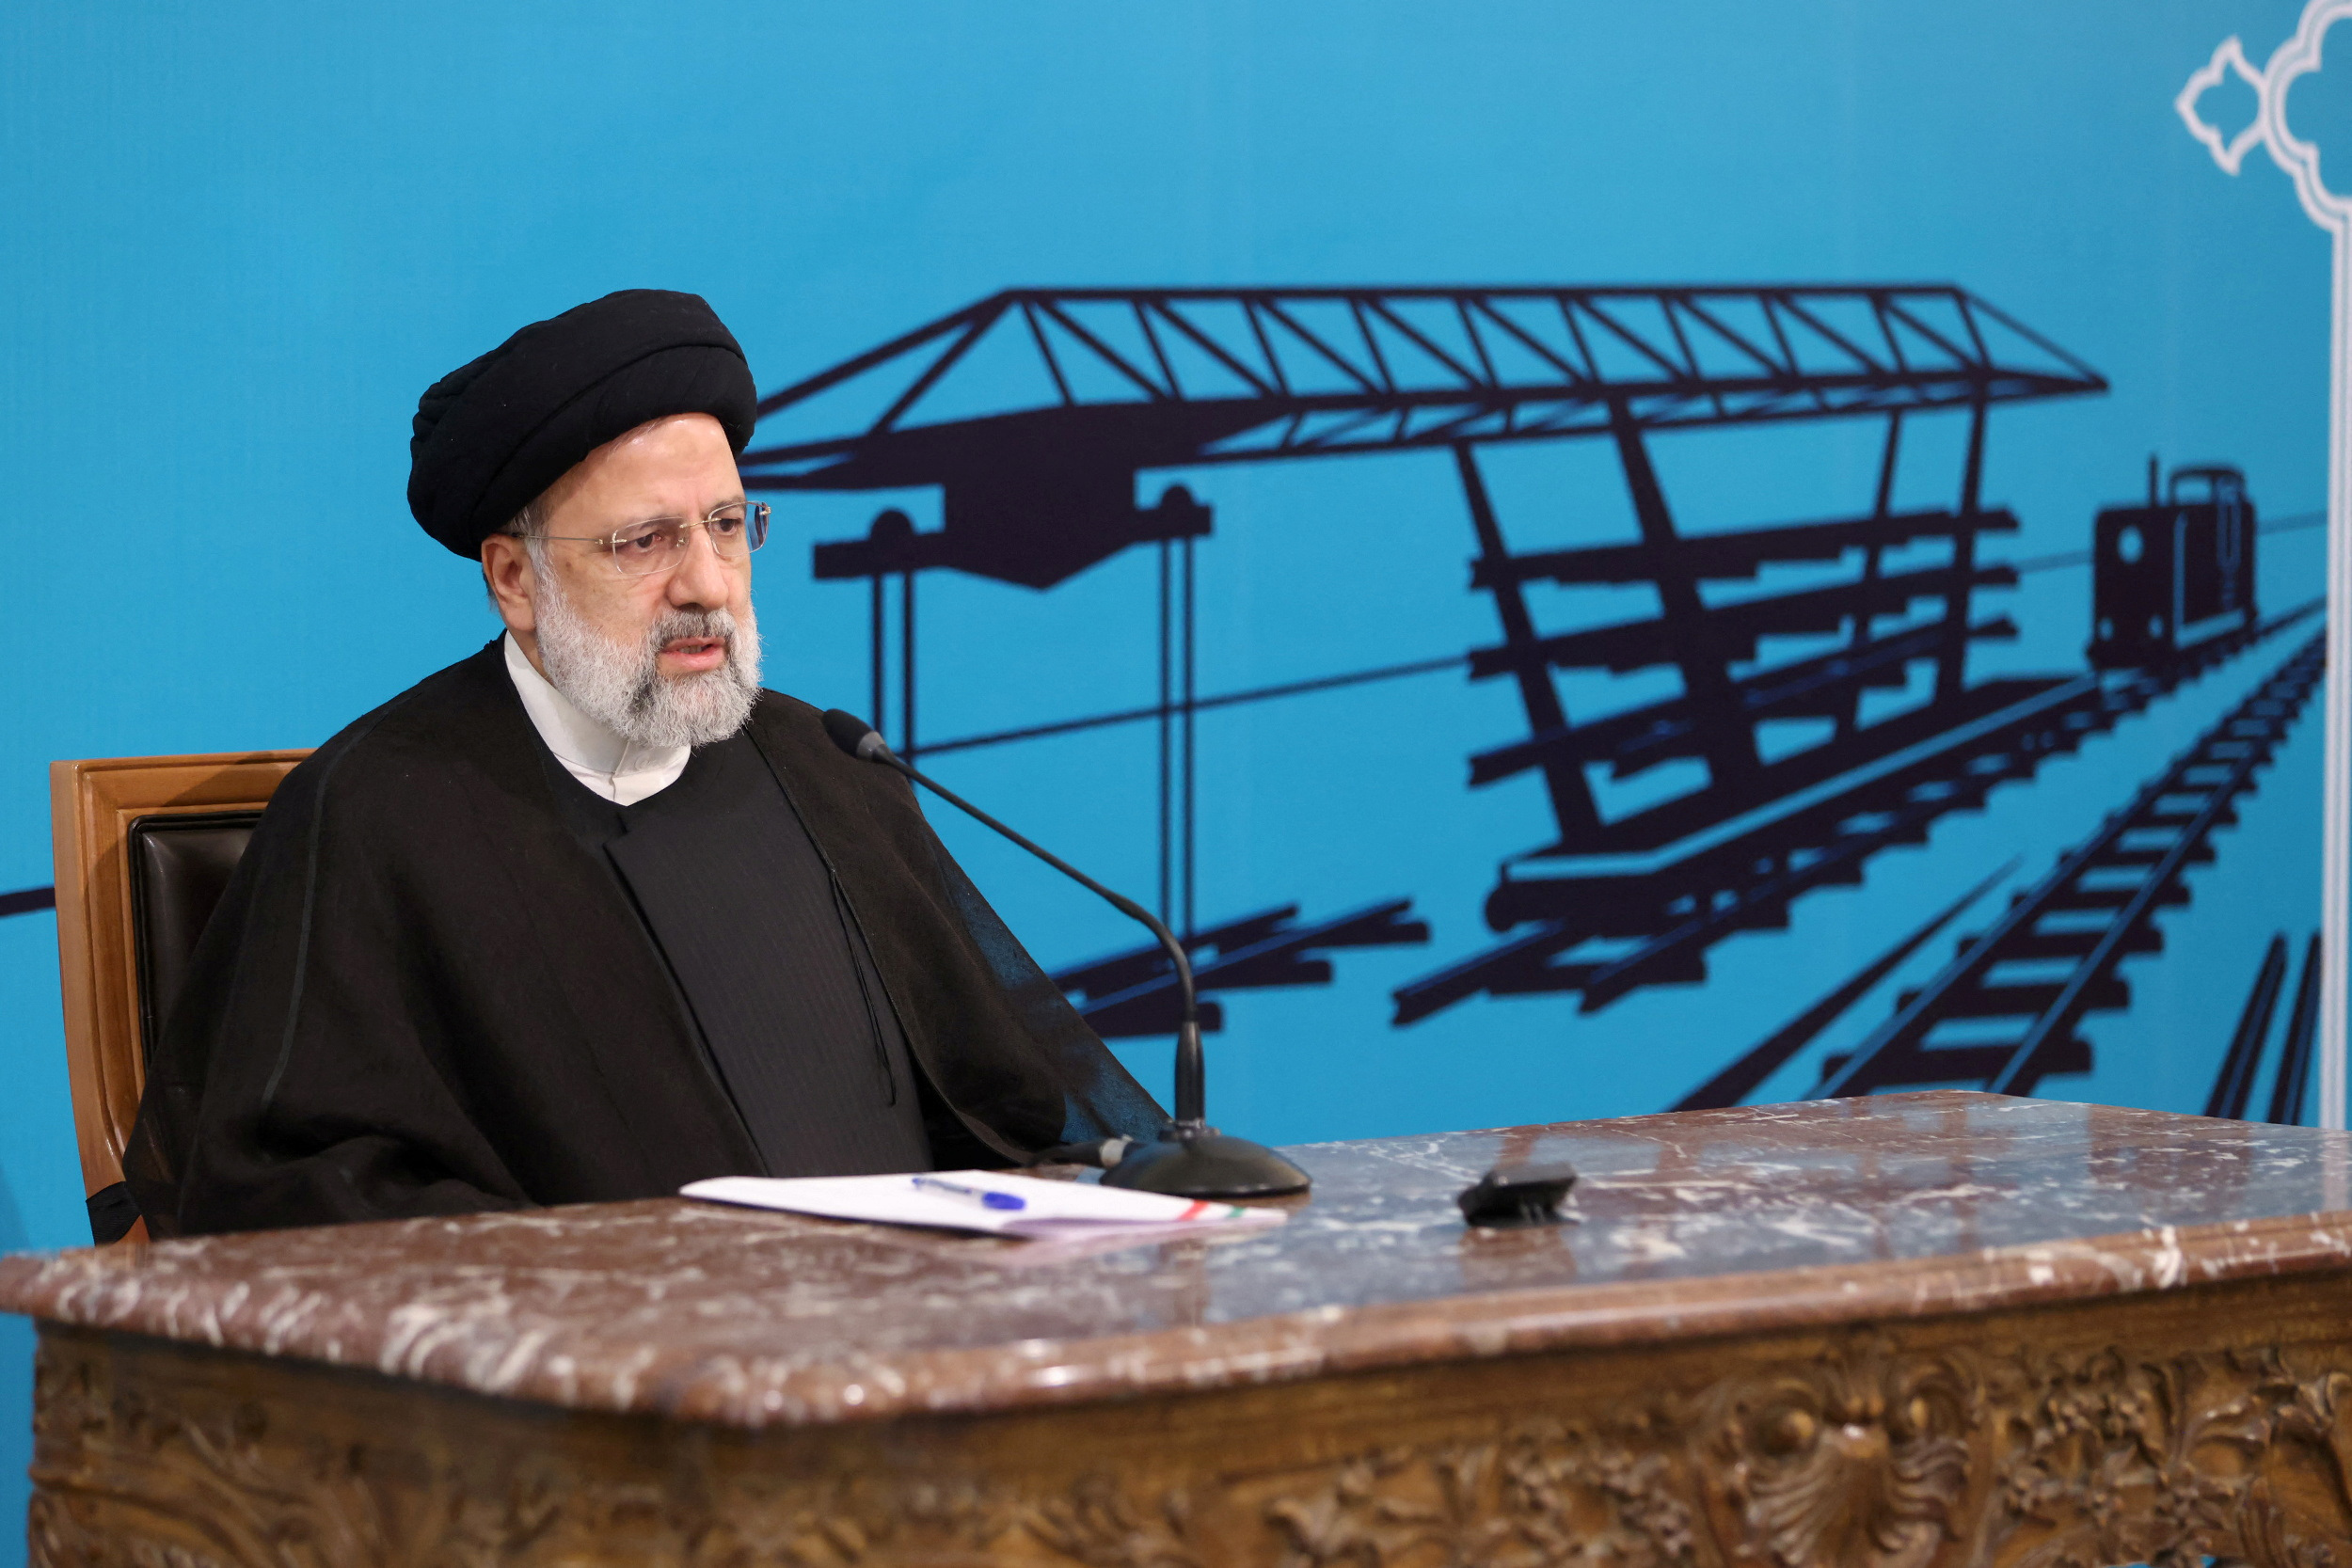 El régimen de Irán pretende consolidar su influencia en la región: su presidente visitará Venezuela, Nicaragua y Cuba